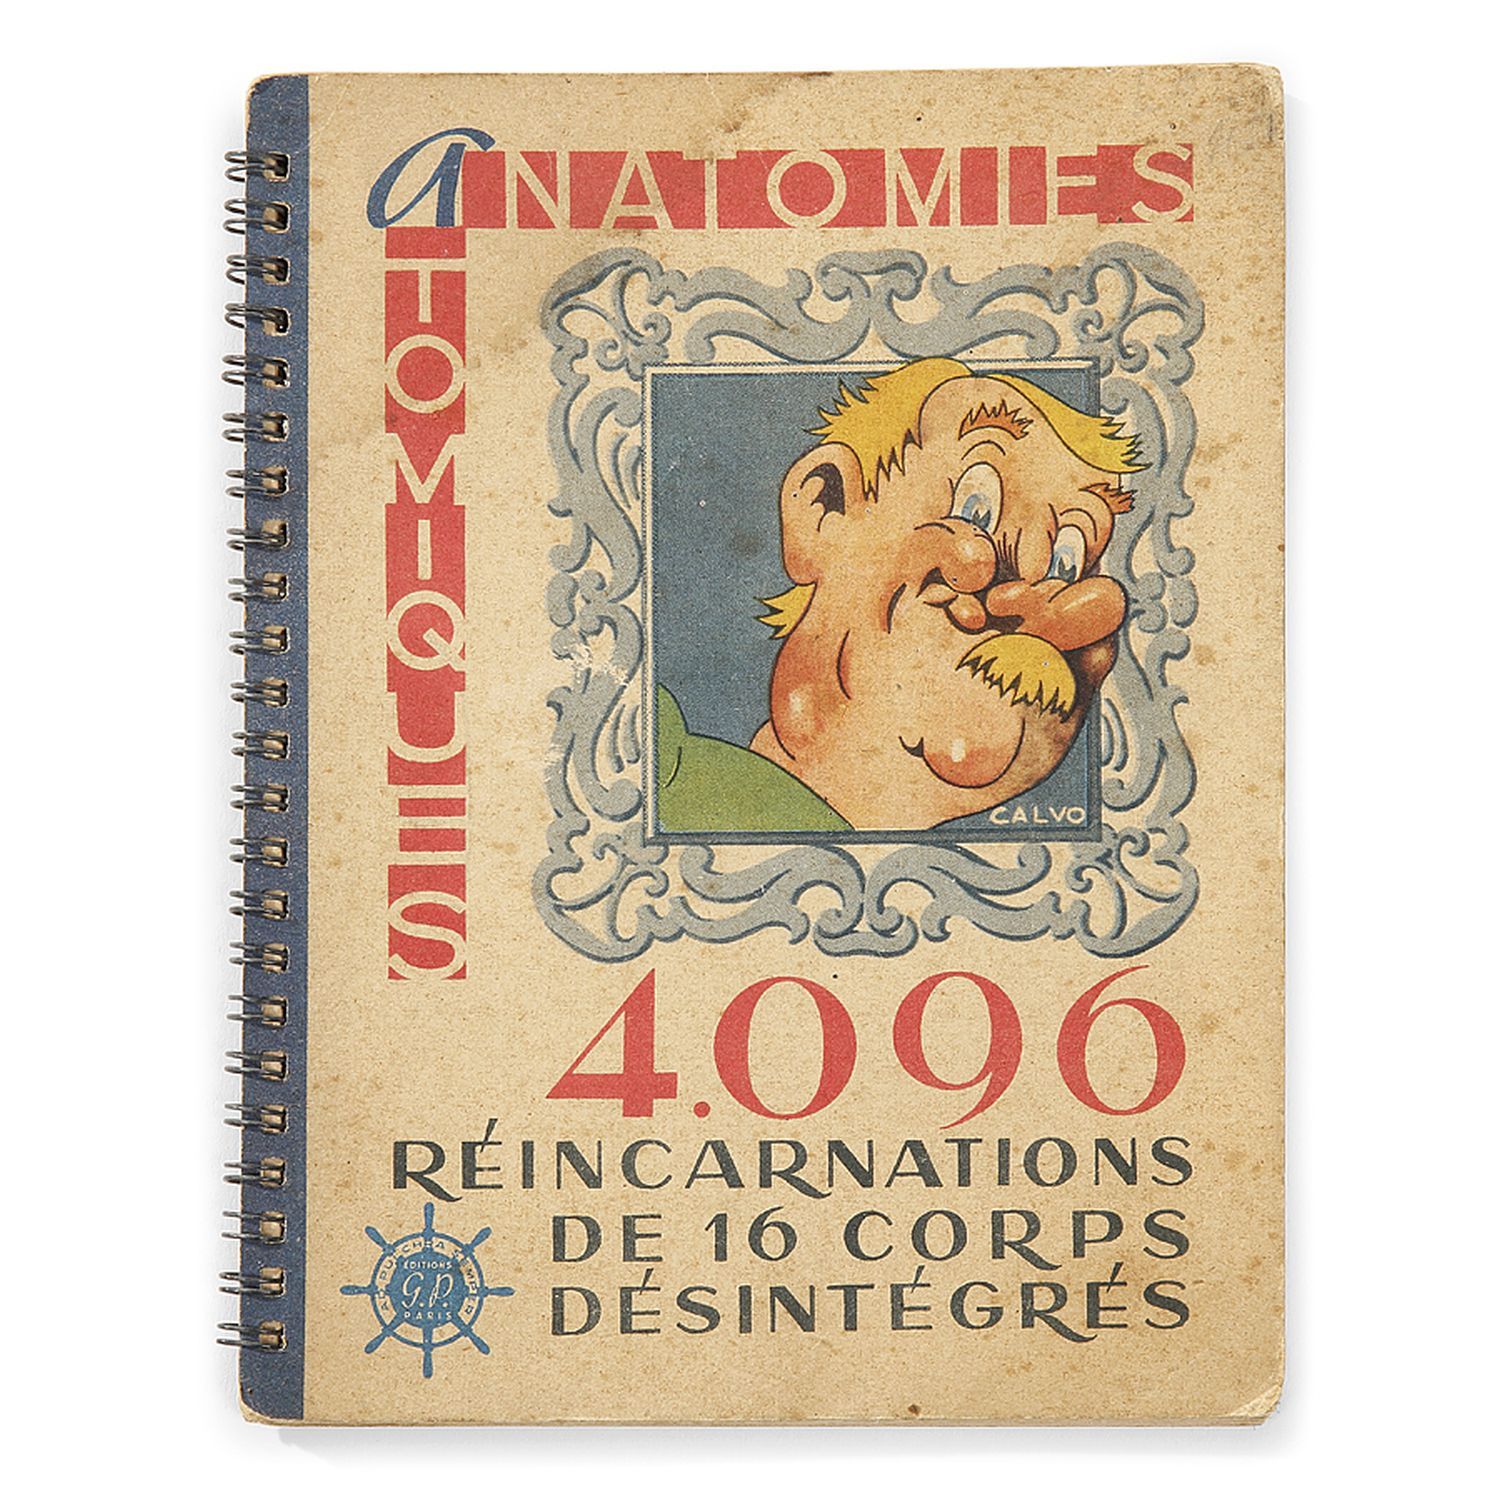 Null CALVO, Edmond-François (1892 -1957)
"Anatomies Atomiques 4096 réincarnation&hellip;